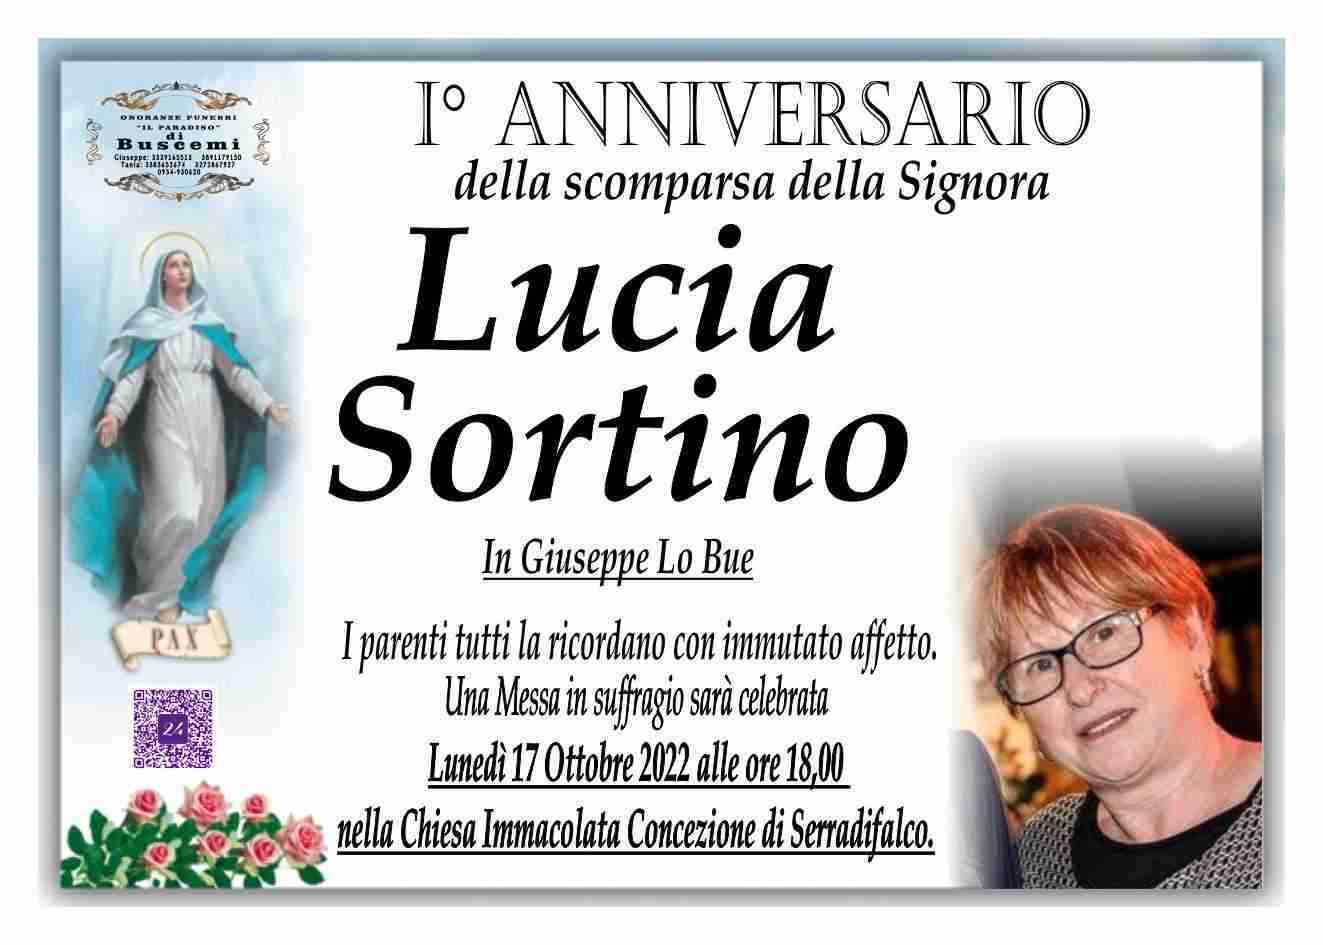 Lucia Sortino